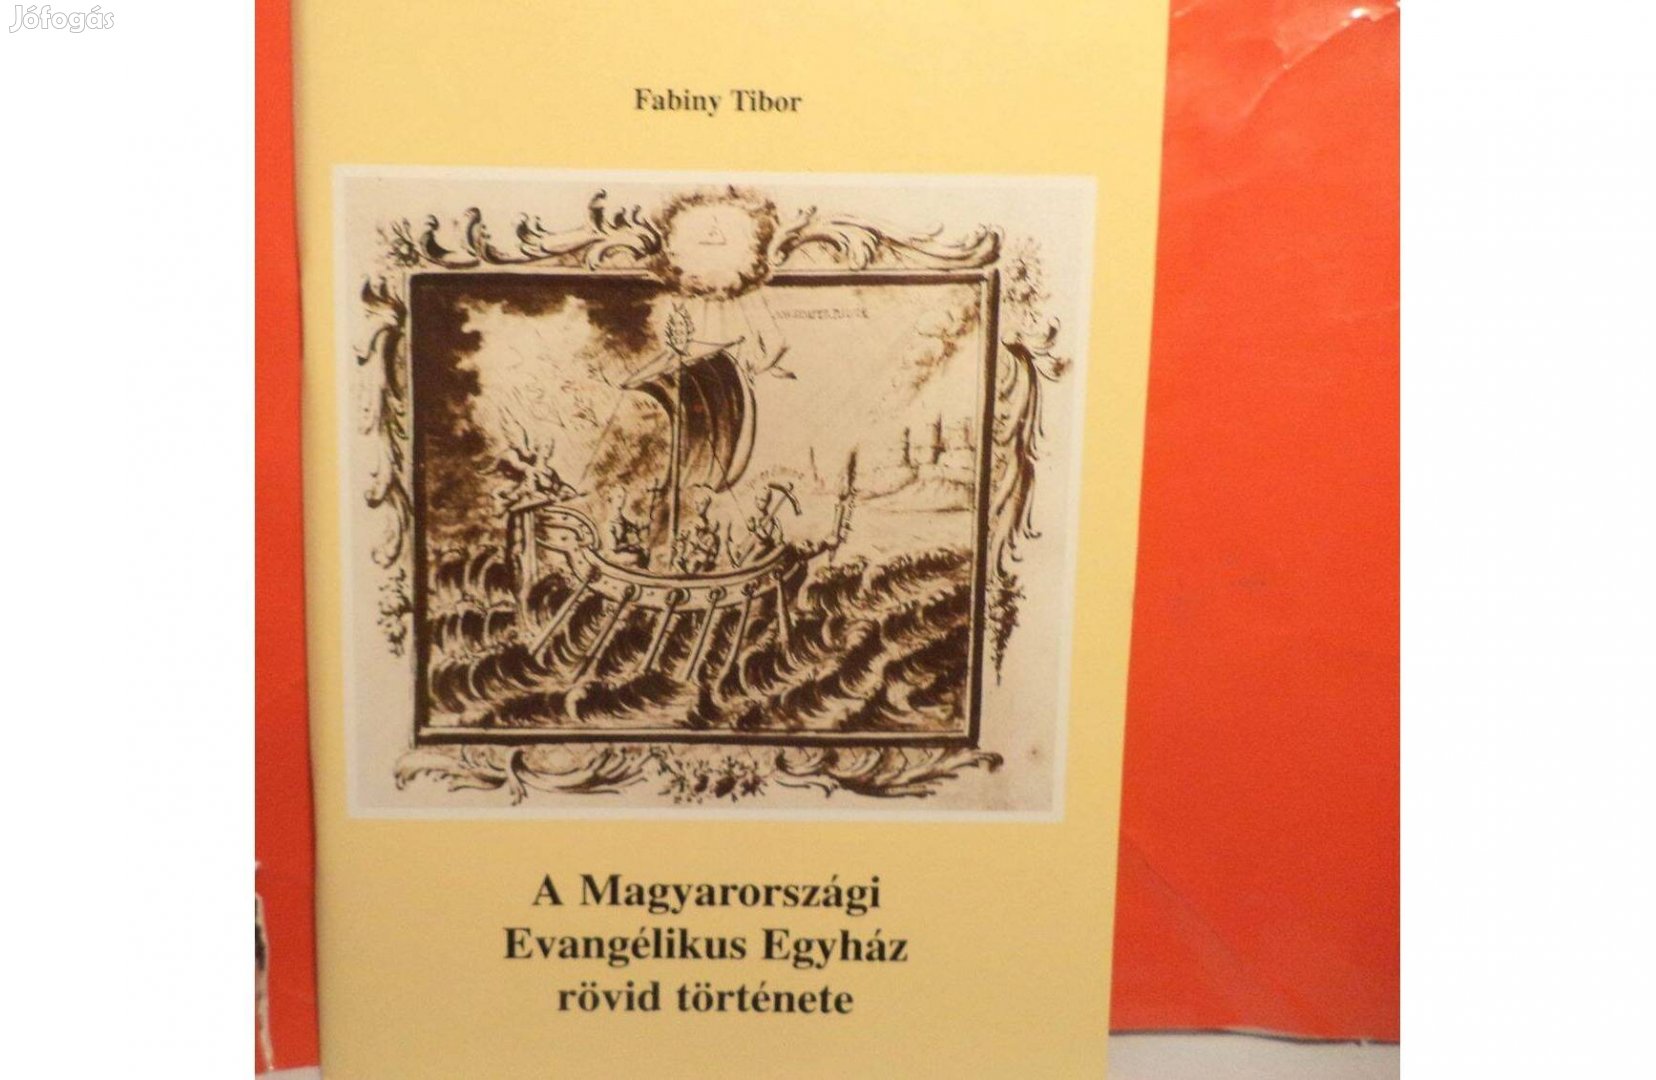 Fabiny Tibor: A Magyarországi Evangélikus Egyház rövid története